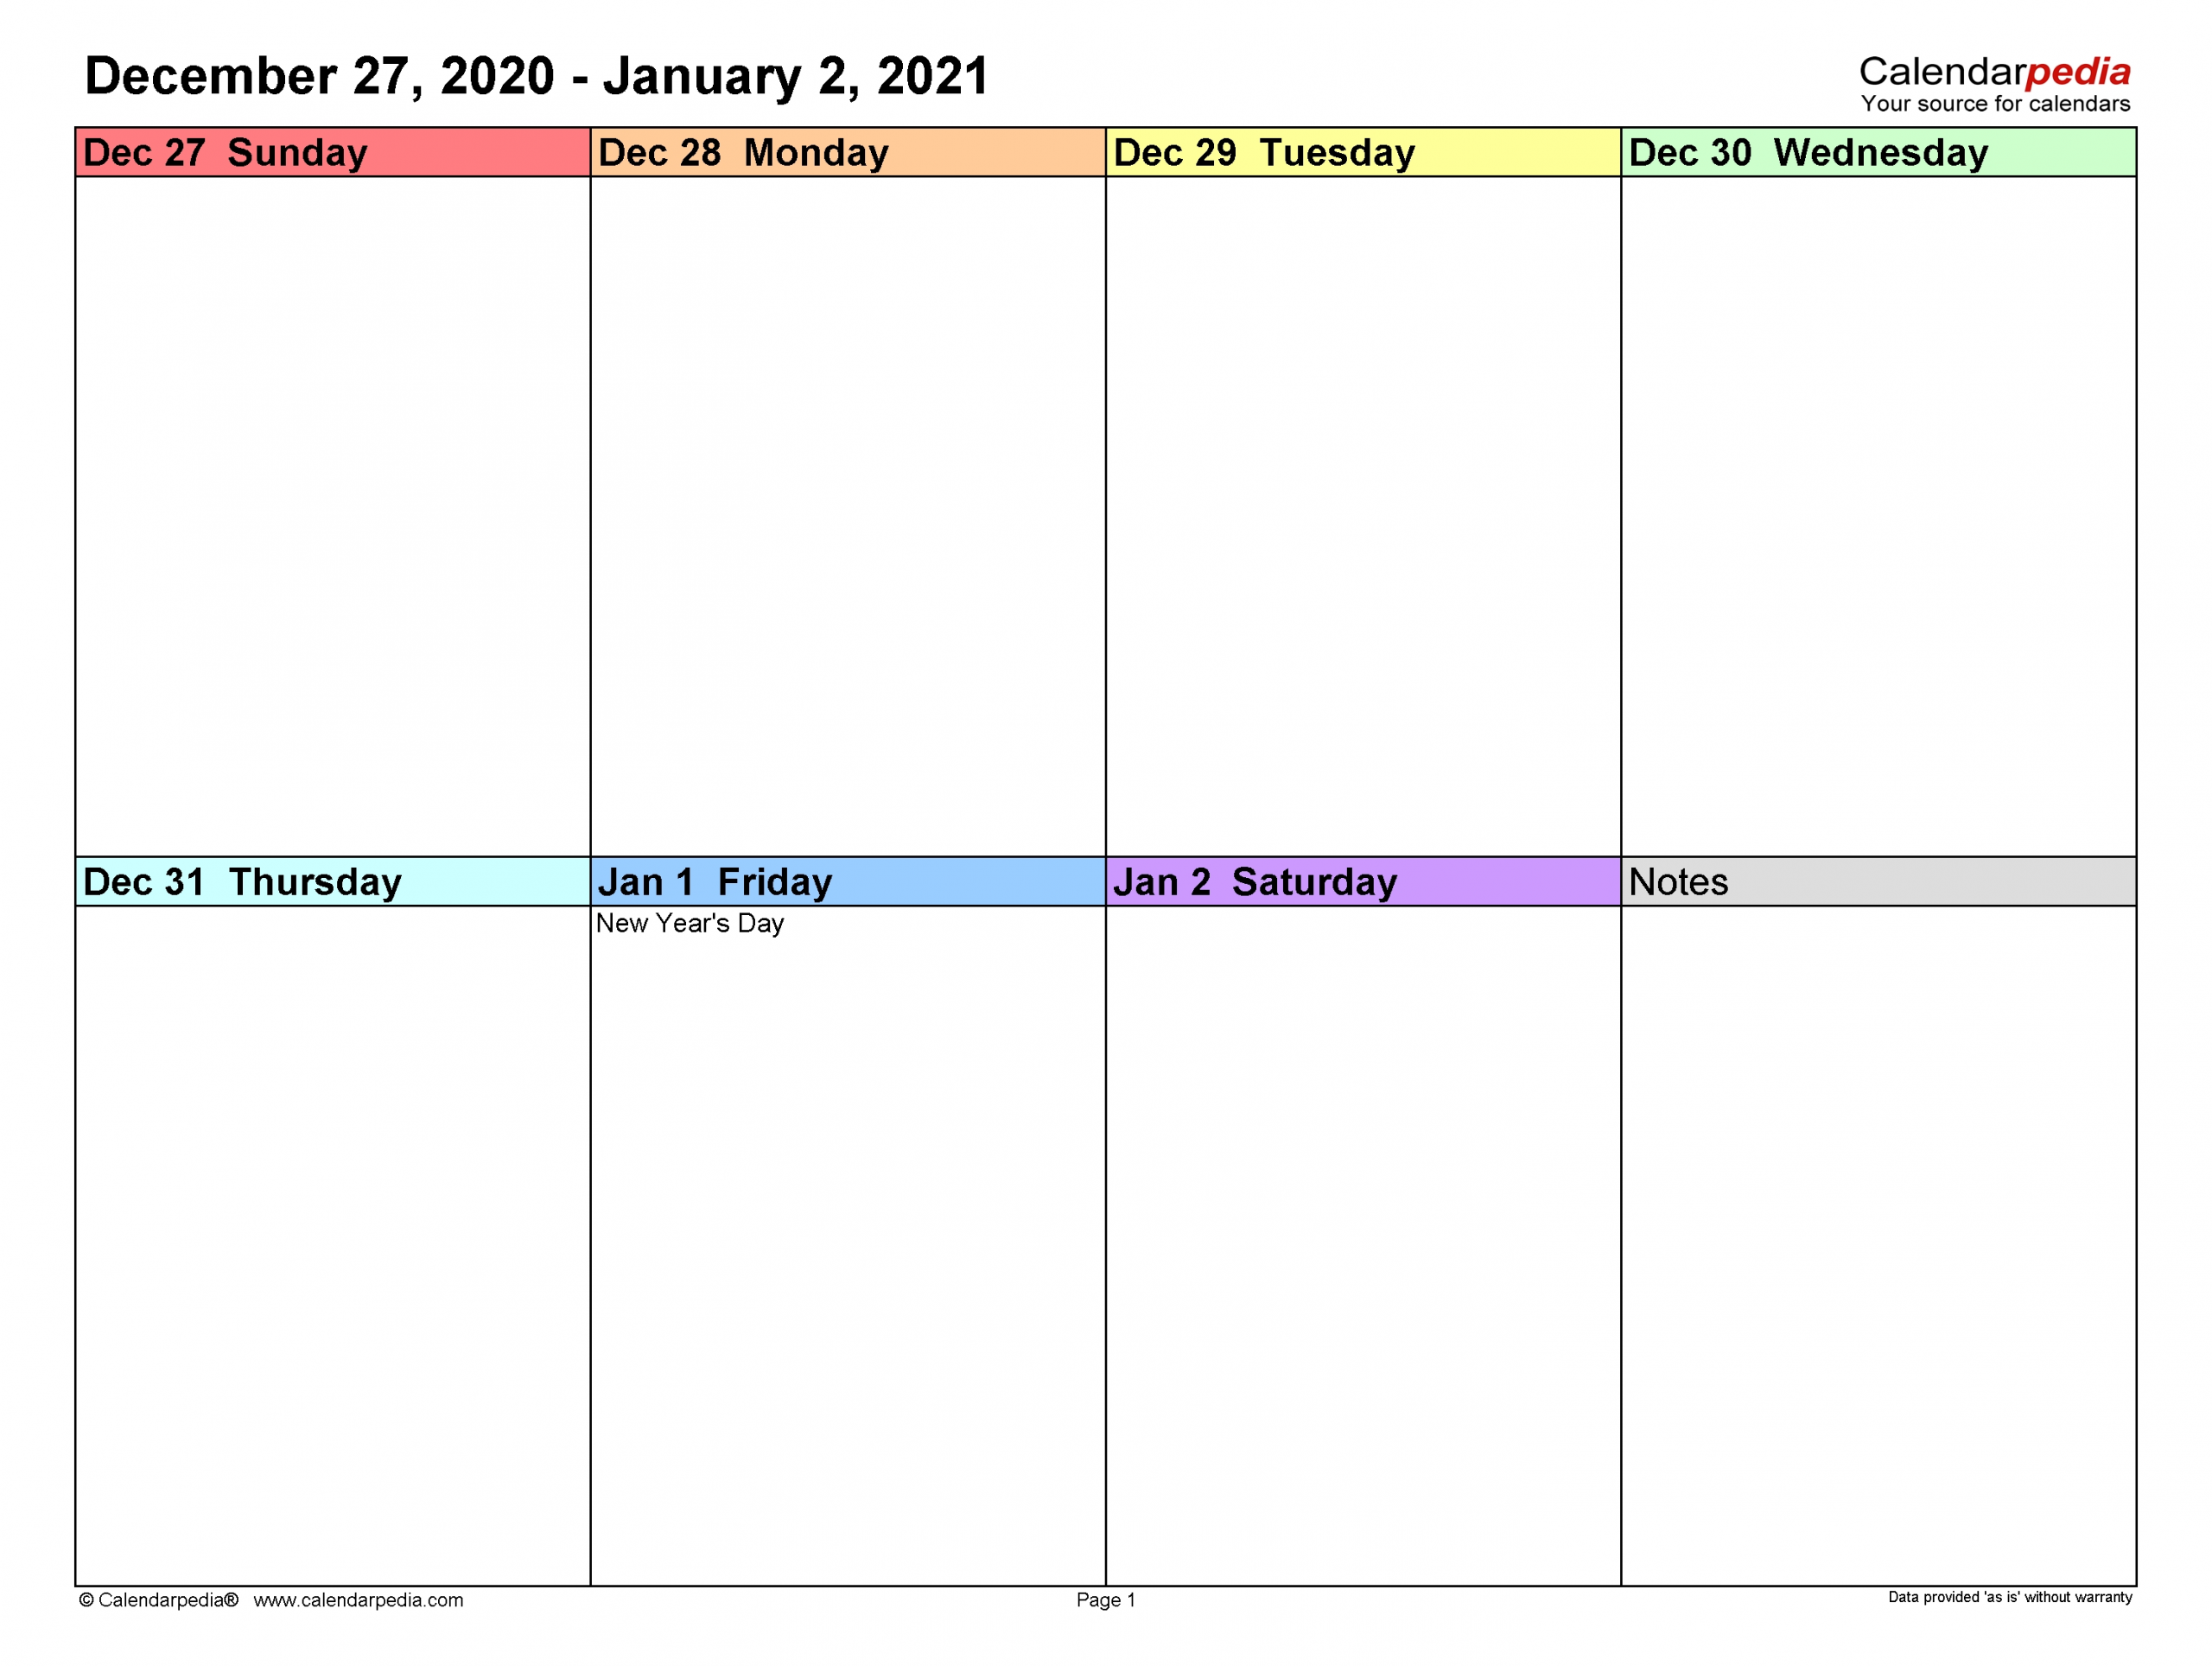 Get 2021 Work Week Calendar Printable